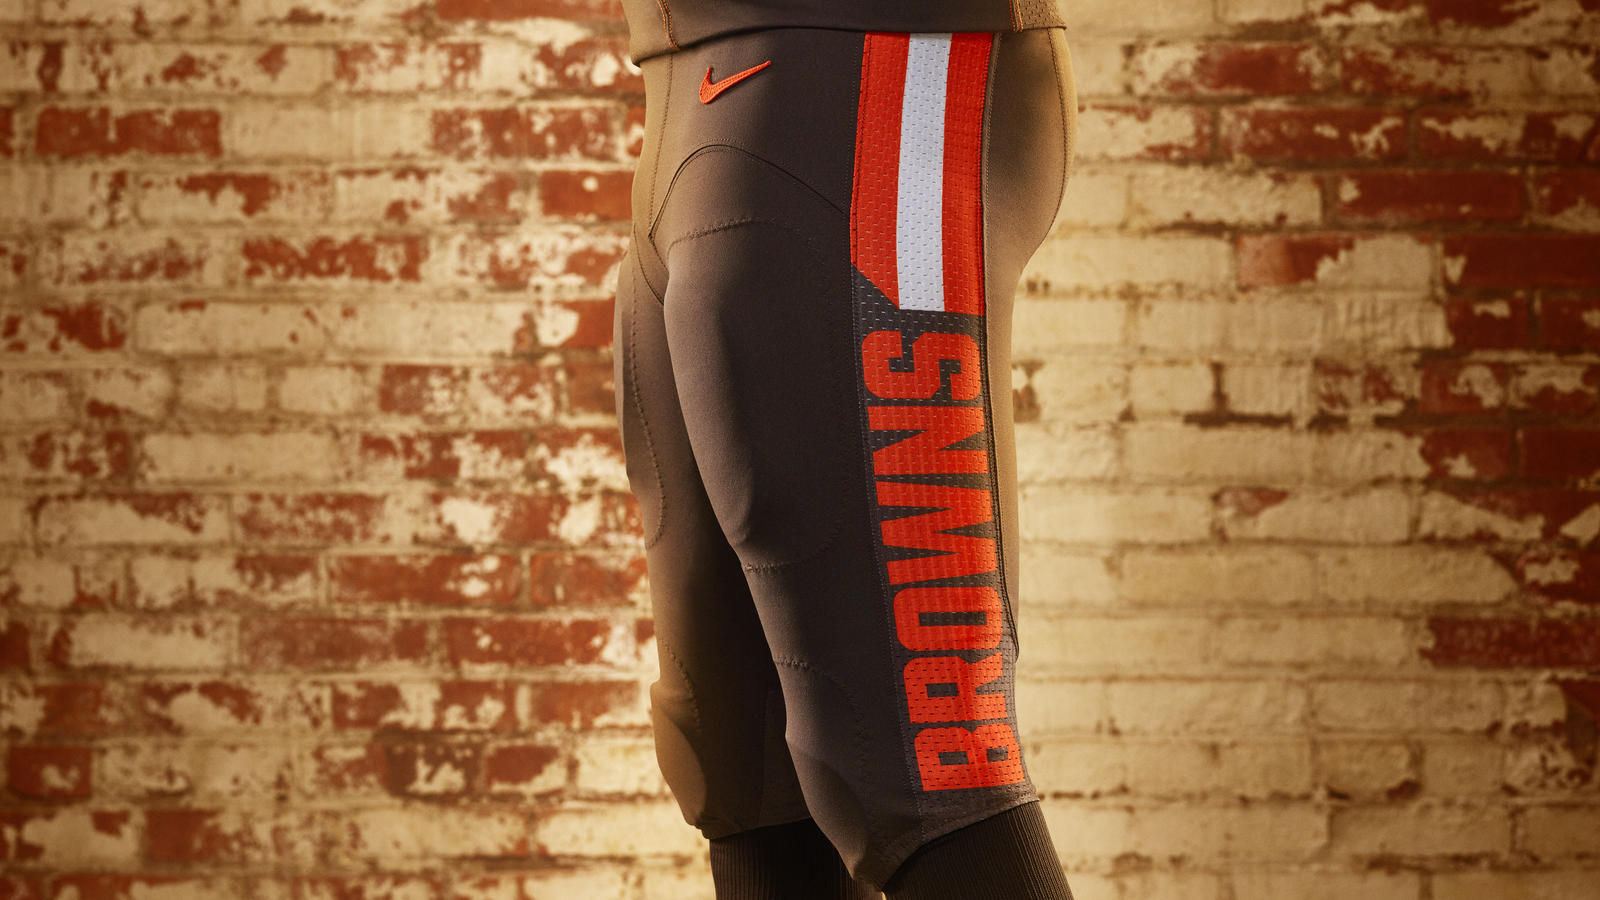 Cleveland Browns Uniform Pants